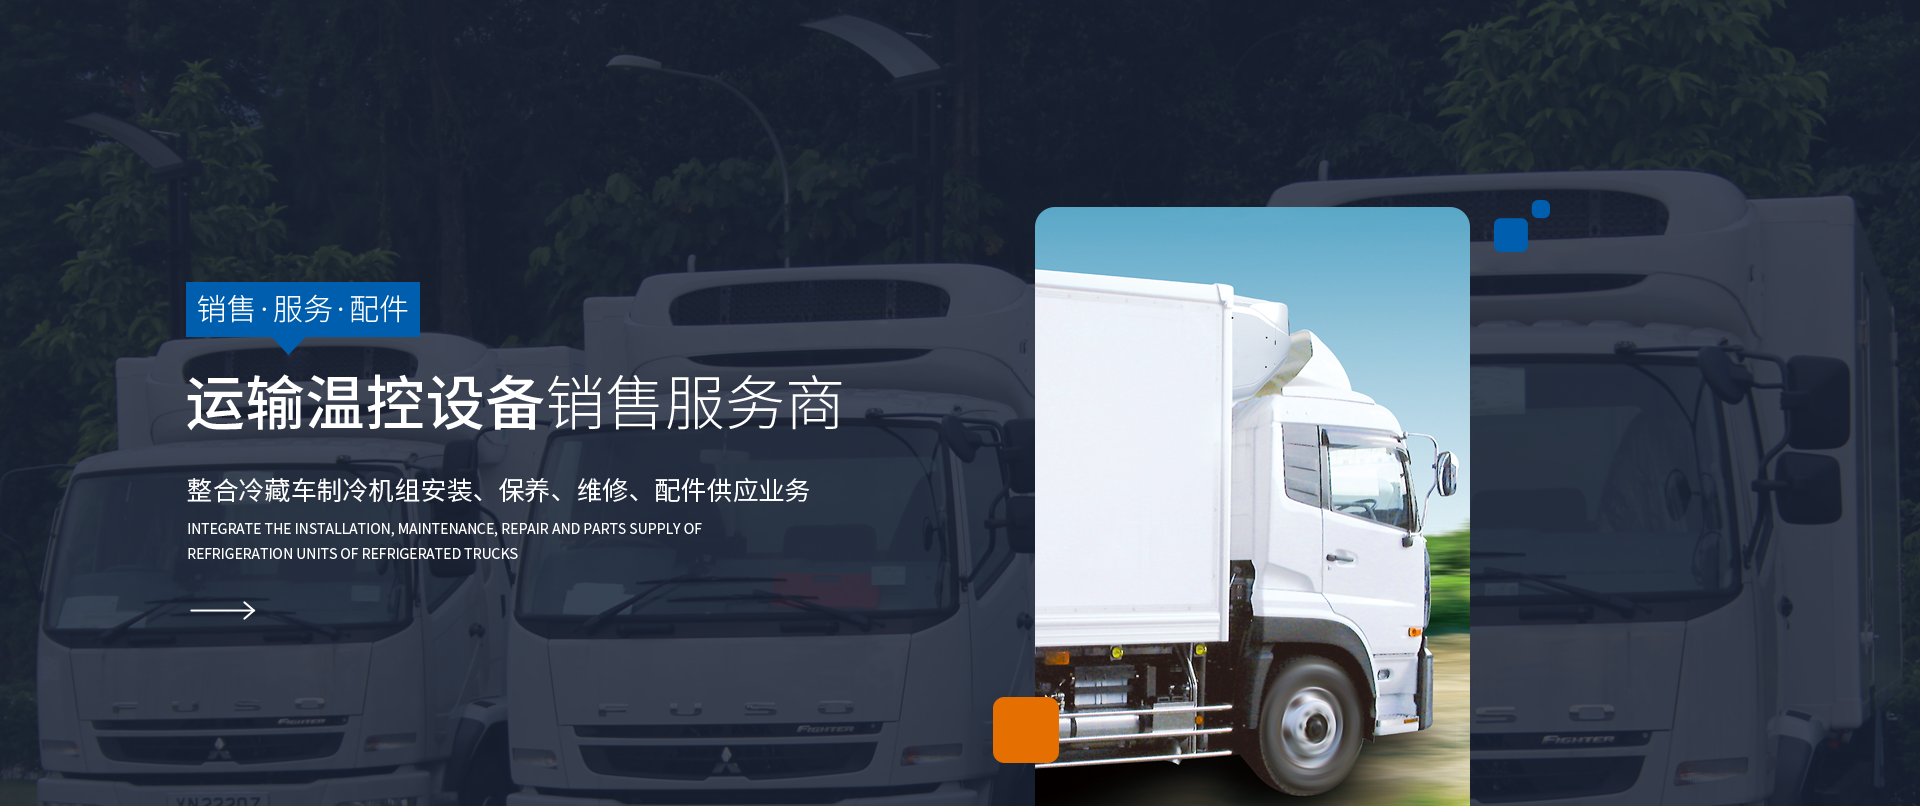 重慶冷藏車,冷凍制冷機組,重慶昌彗汽車零部件有限公司